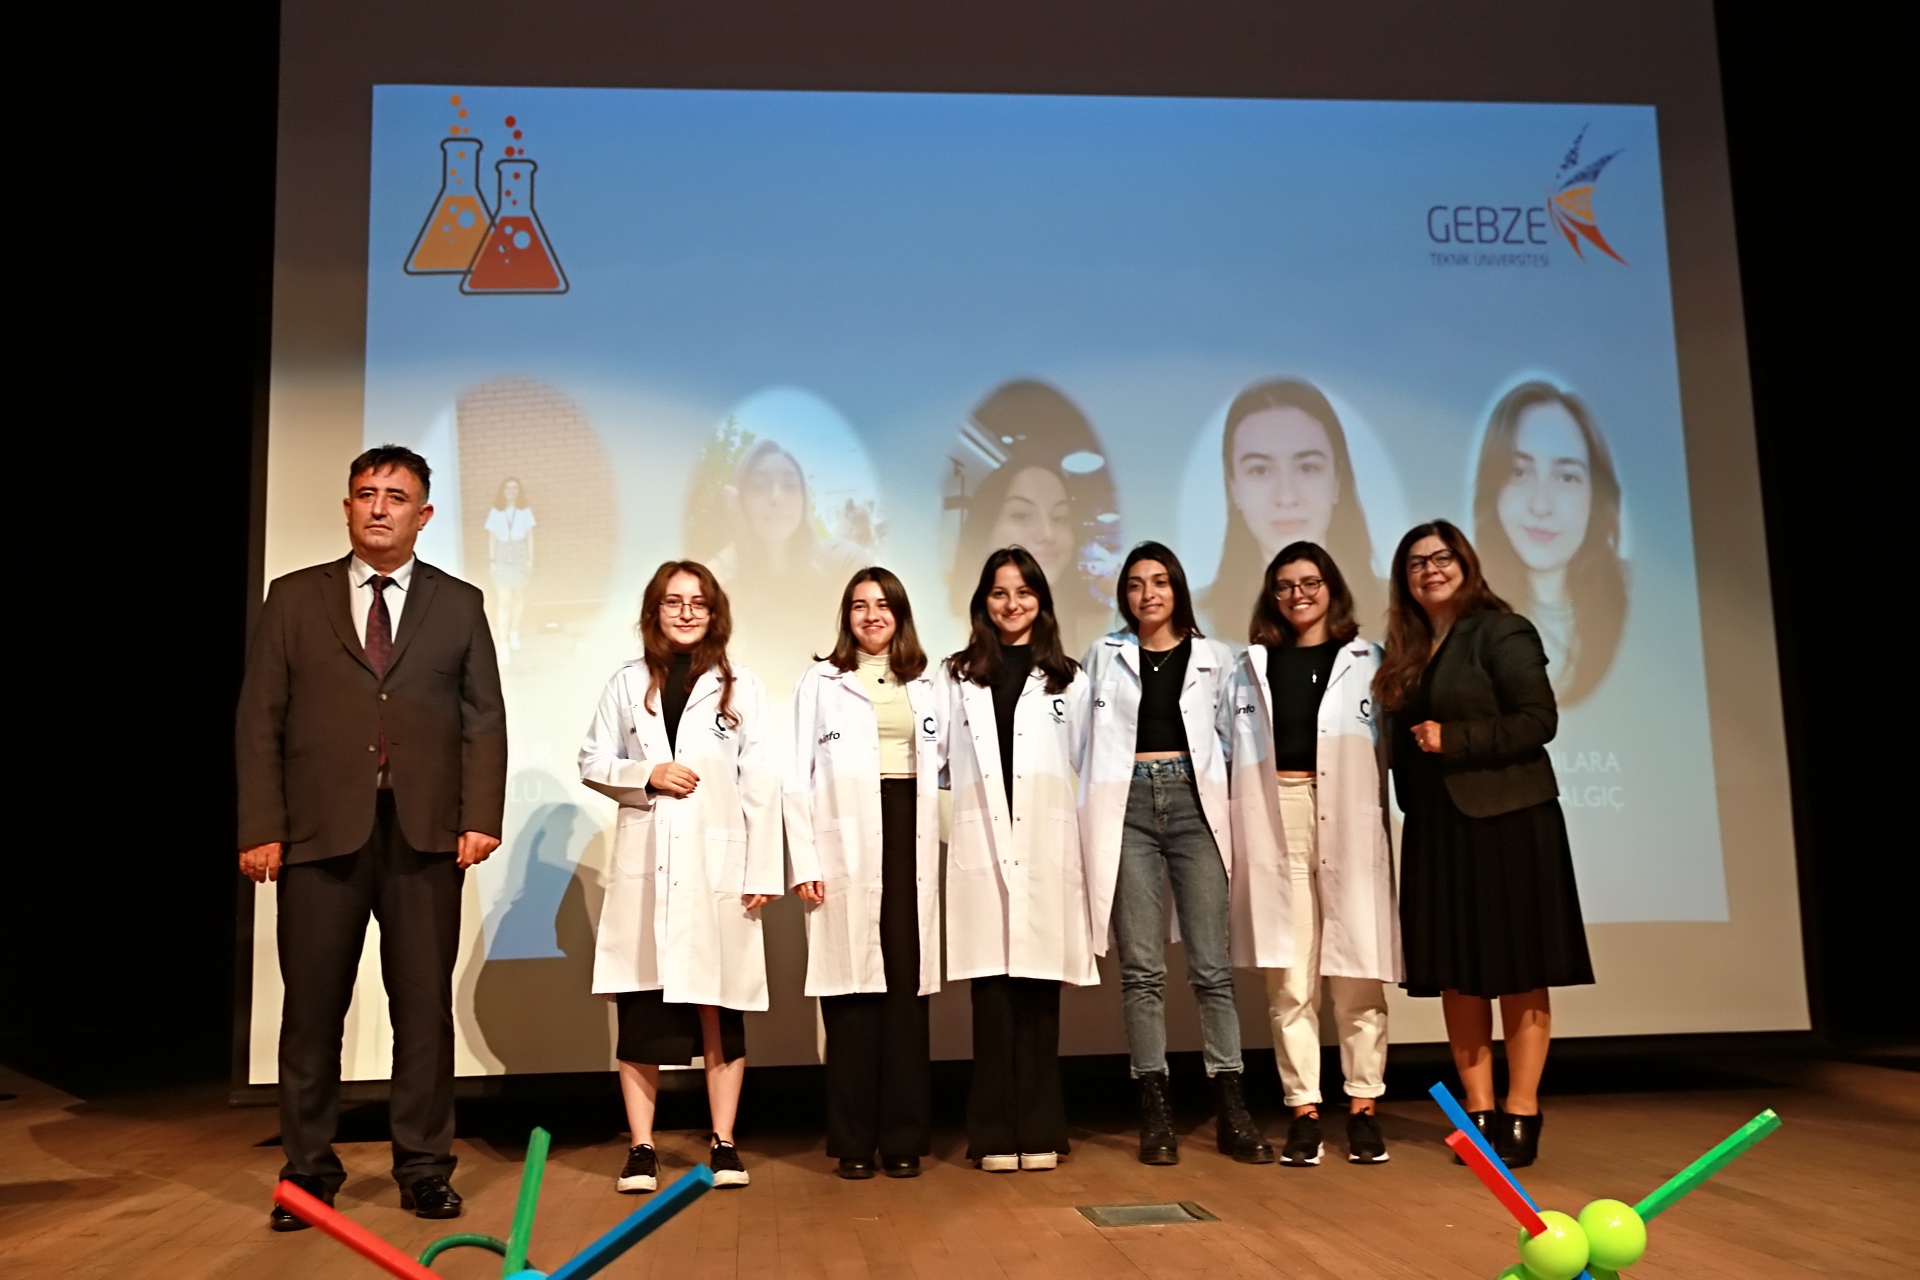 GTÜ Kimya Öğrencileri Önlük Giydi